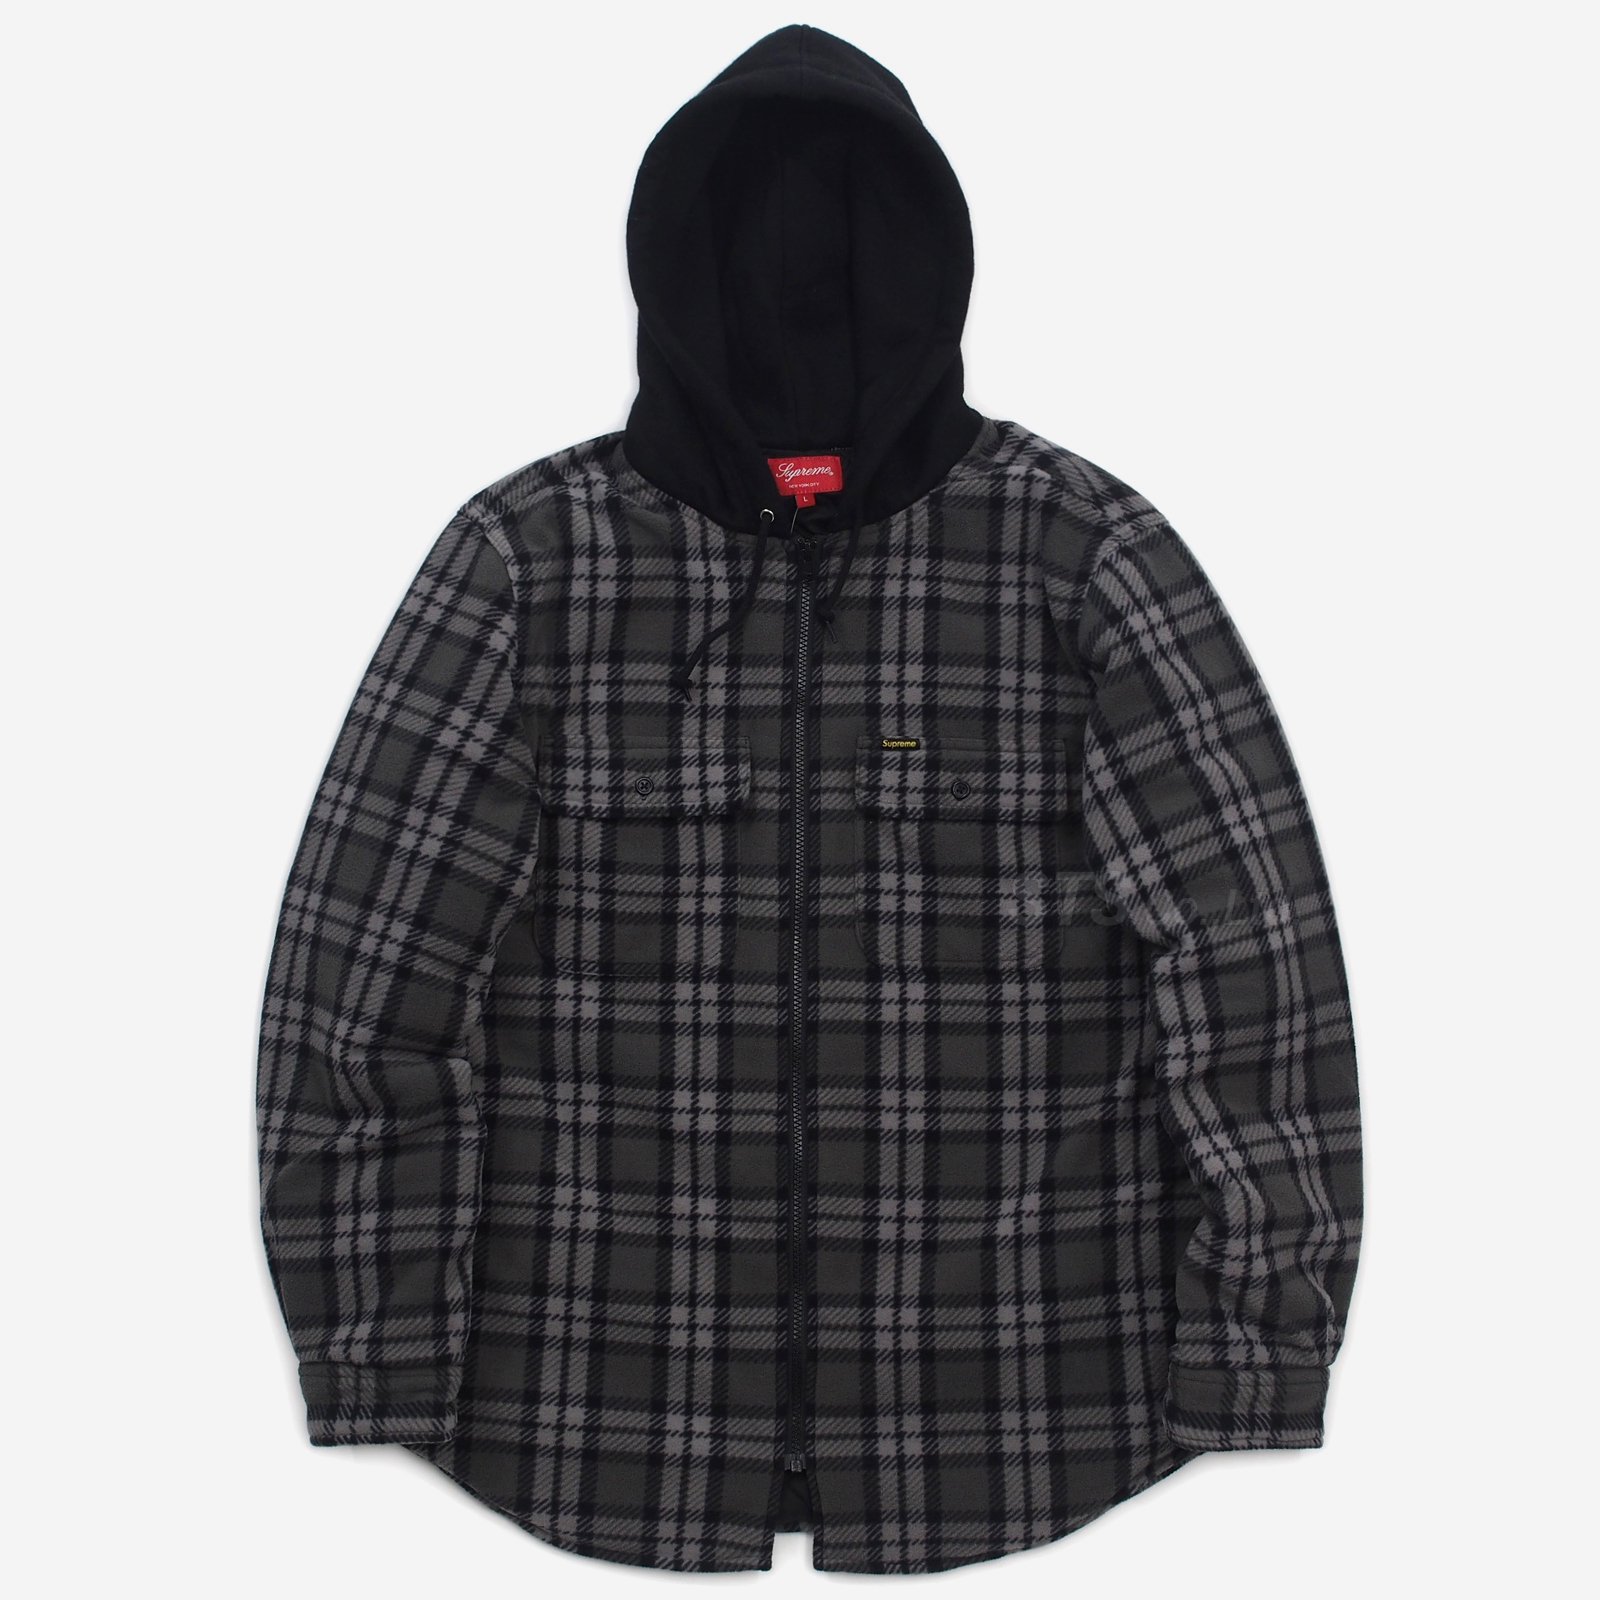 【送料無料】supreme hooded plaid flannel shirt